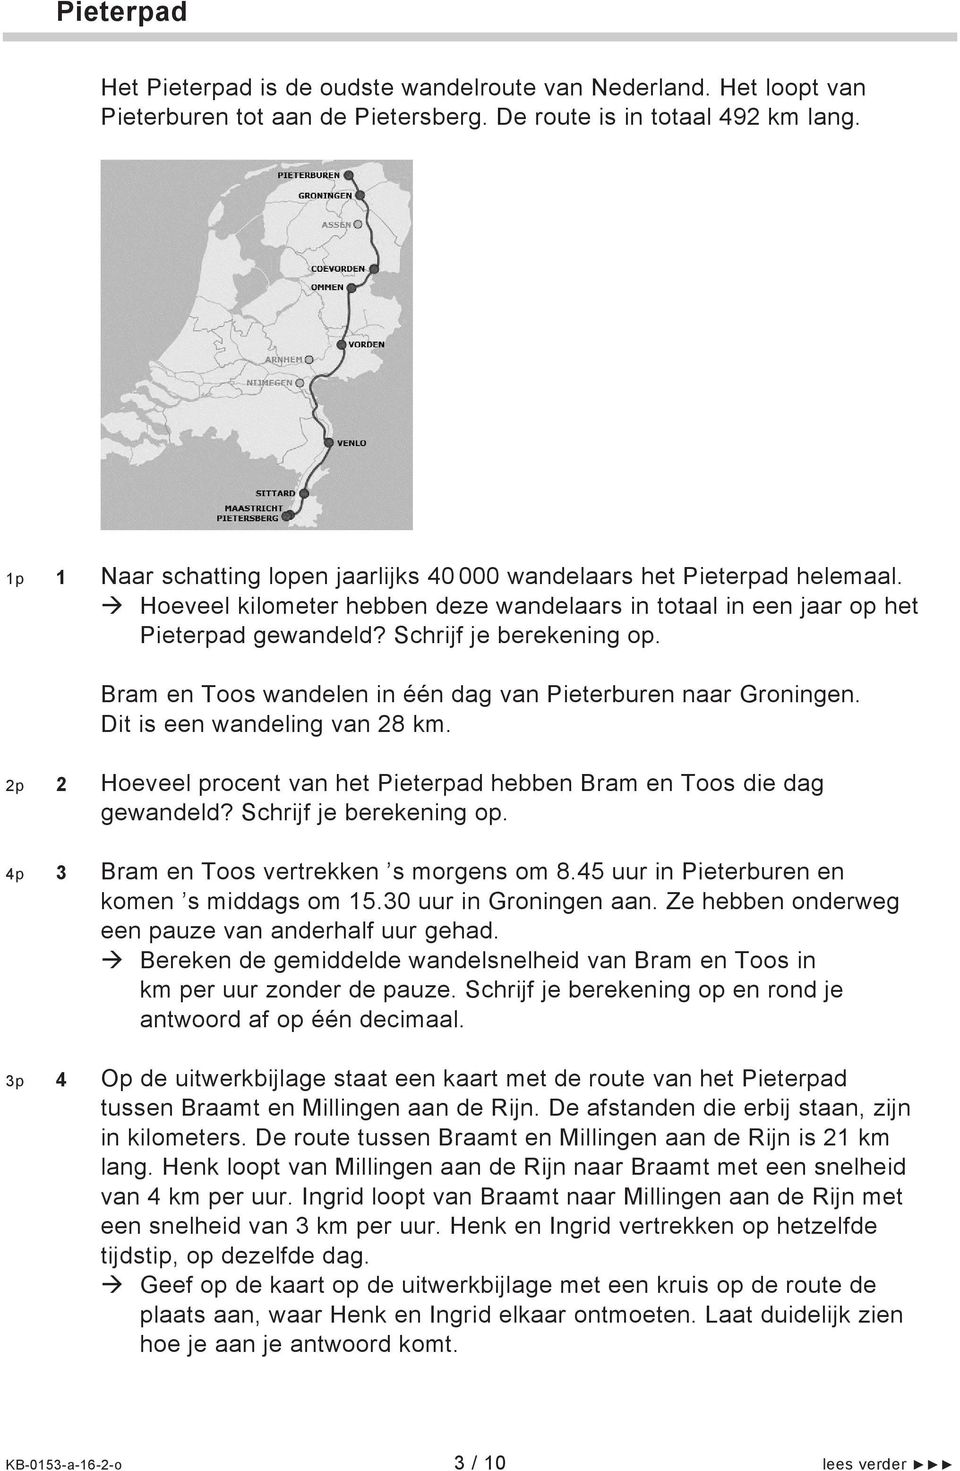 Bram en Toos wandelen in één dag van Pieterburen naar Groningen. Dit is een wandeling van 28 km. 2p 2 Hoeveel procent van het Pieterpad hebben Bram en Toos die dag gewandeld? Schrijf je berekening op.